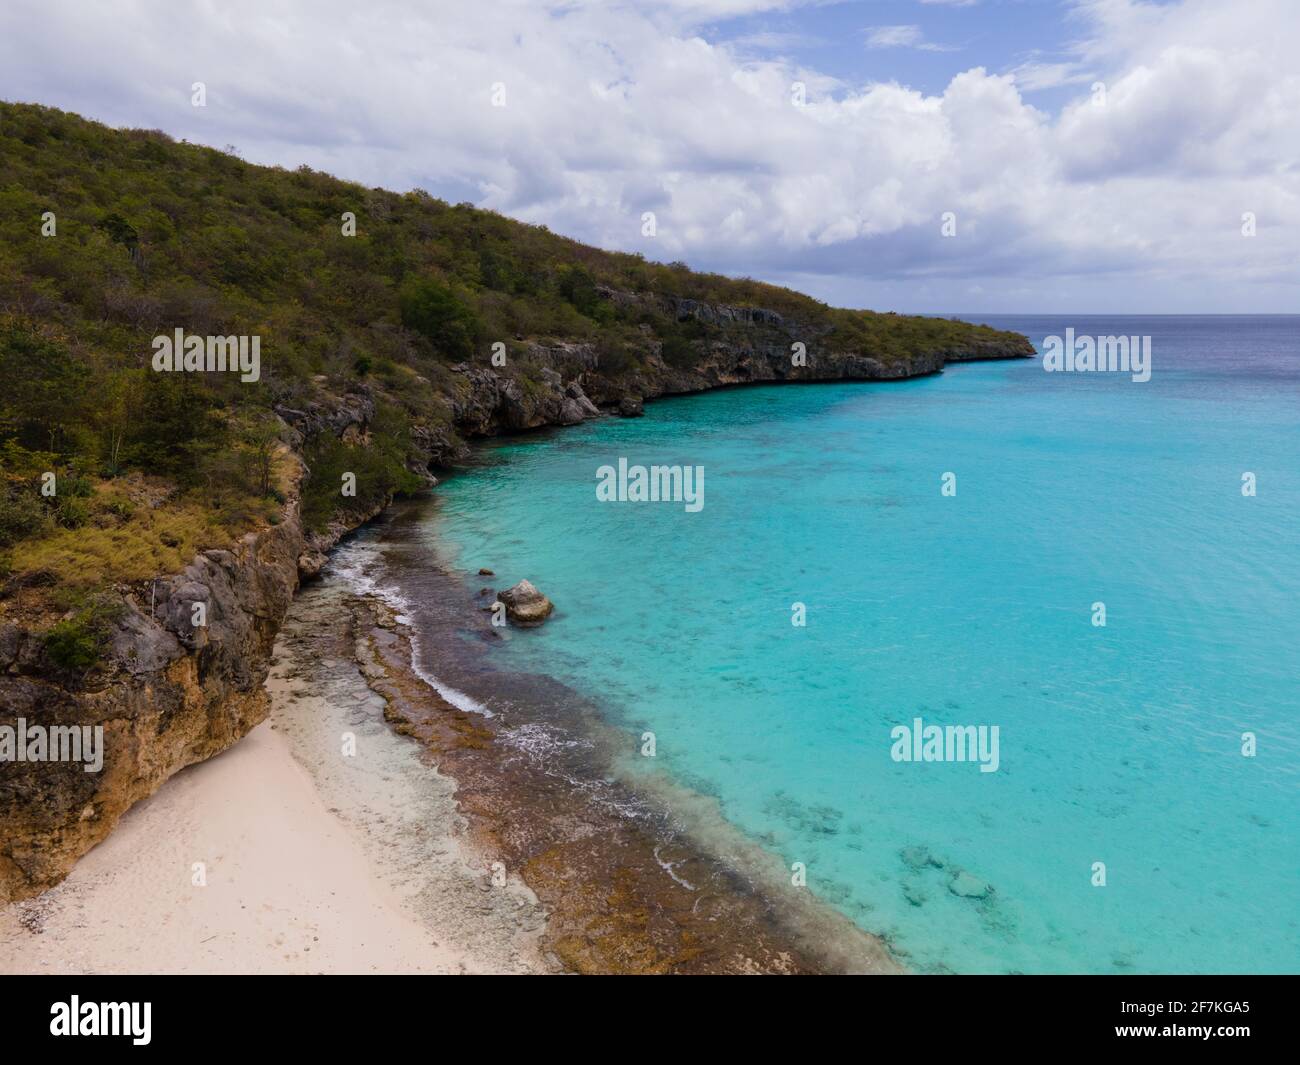 Vista aerea della costa di Curacao nel Mar dei Caraibi con acque turchesi, spiaggia di sabbia bianca e splendida barriera corallina a Playa CAS Abao Curacao Foto Stock